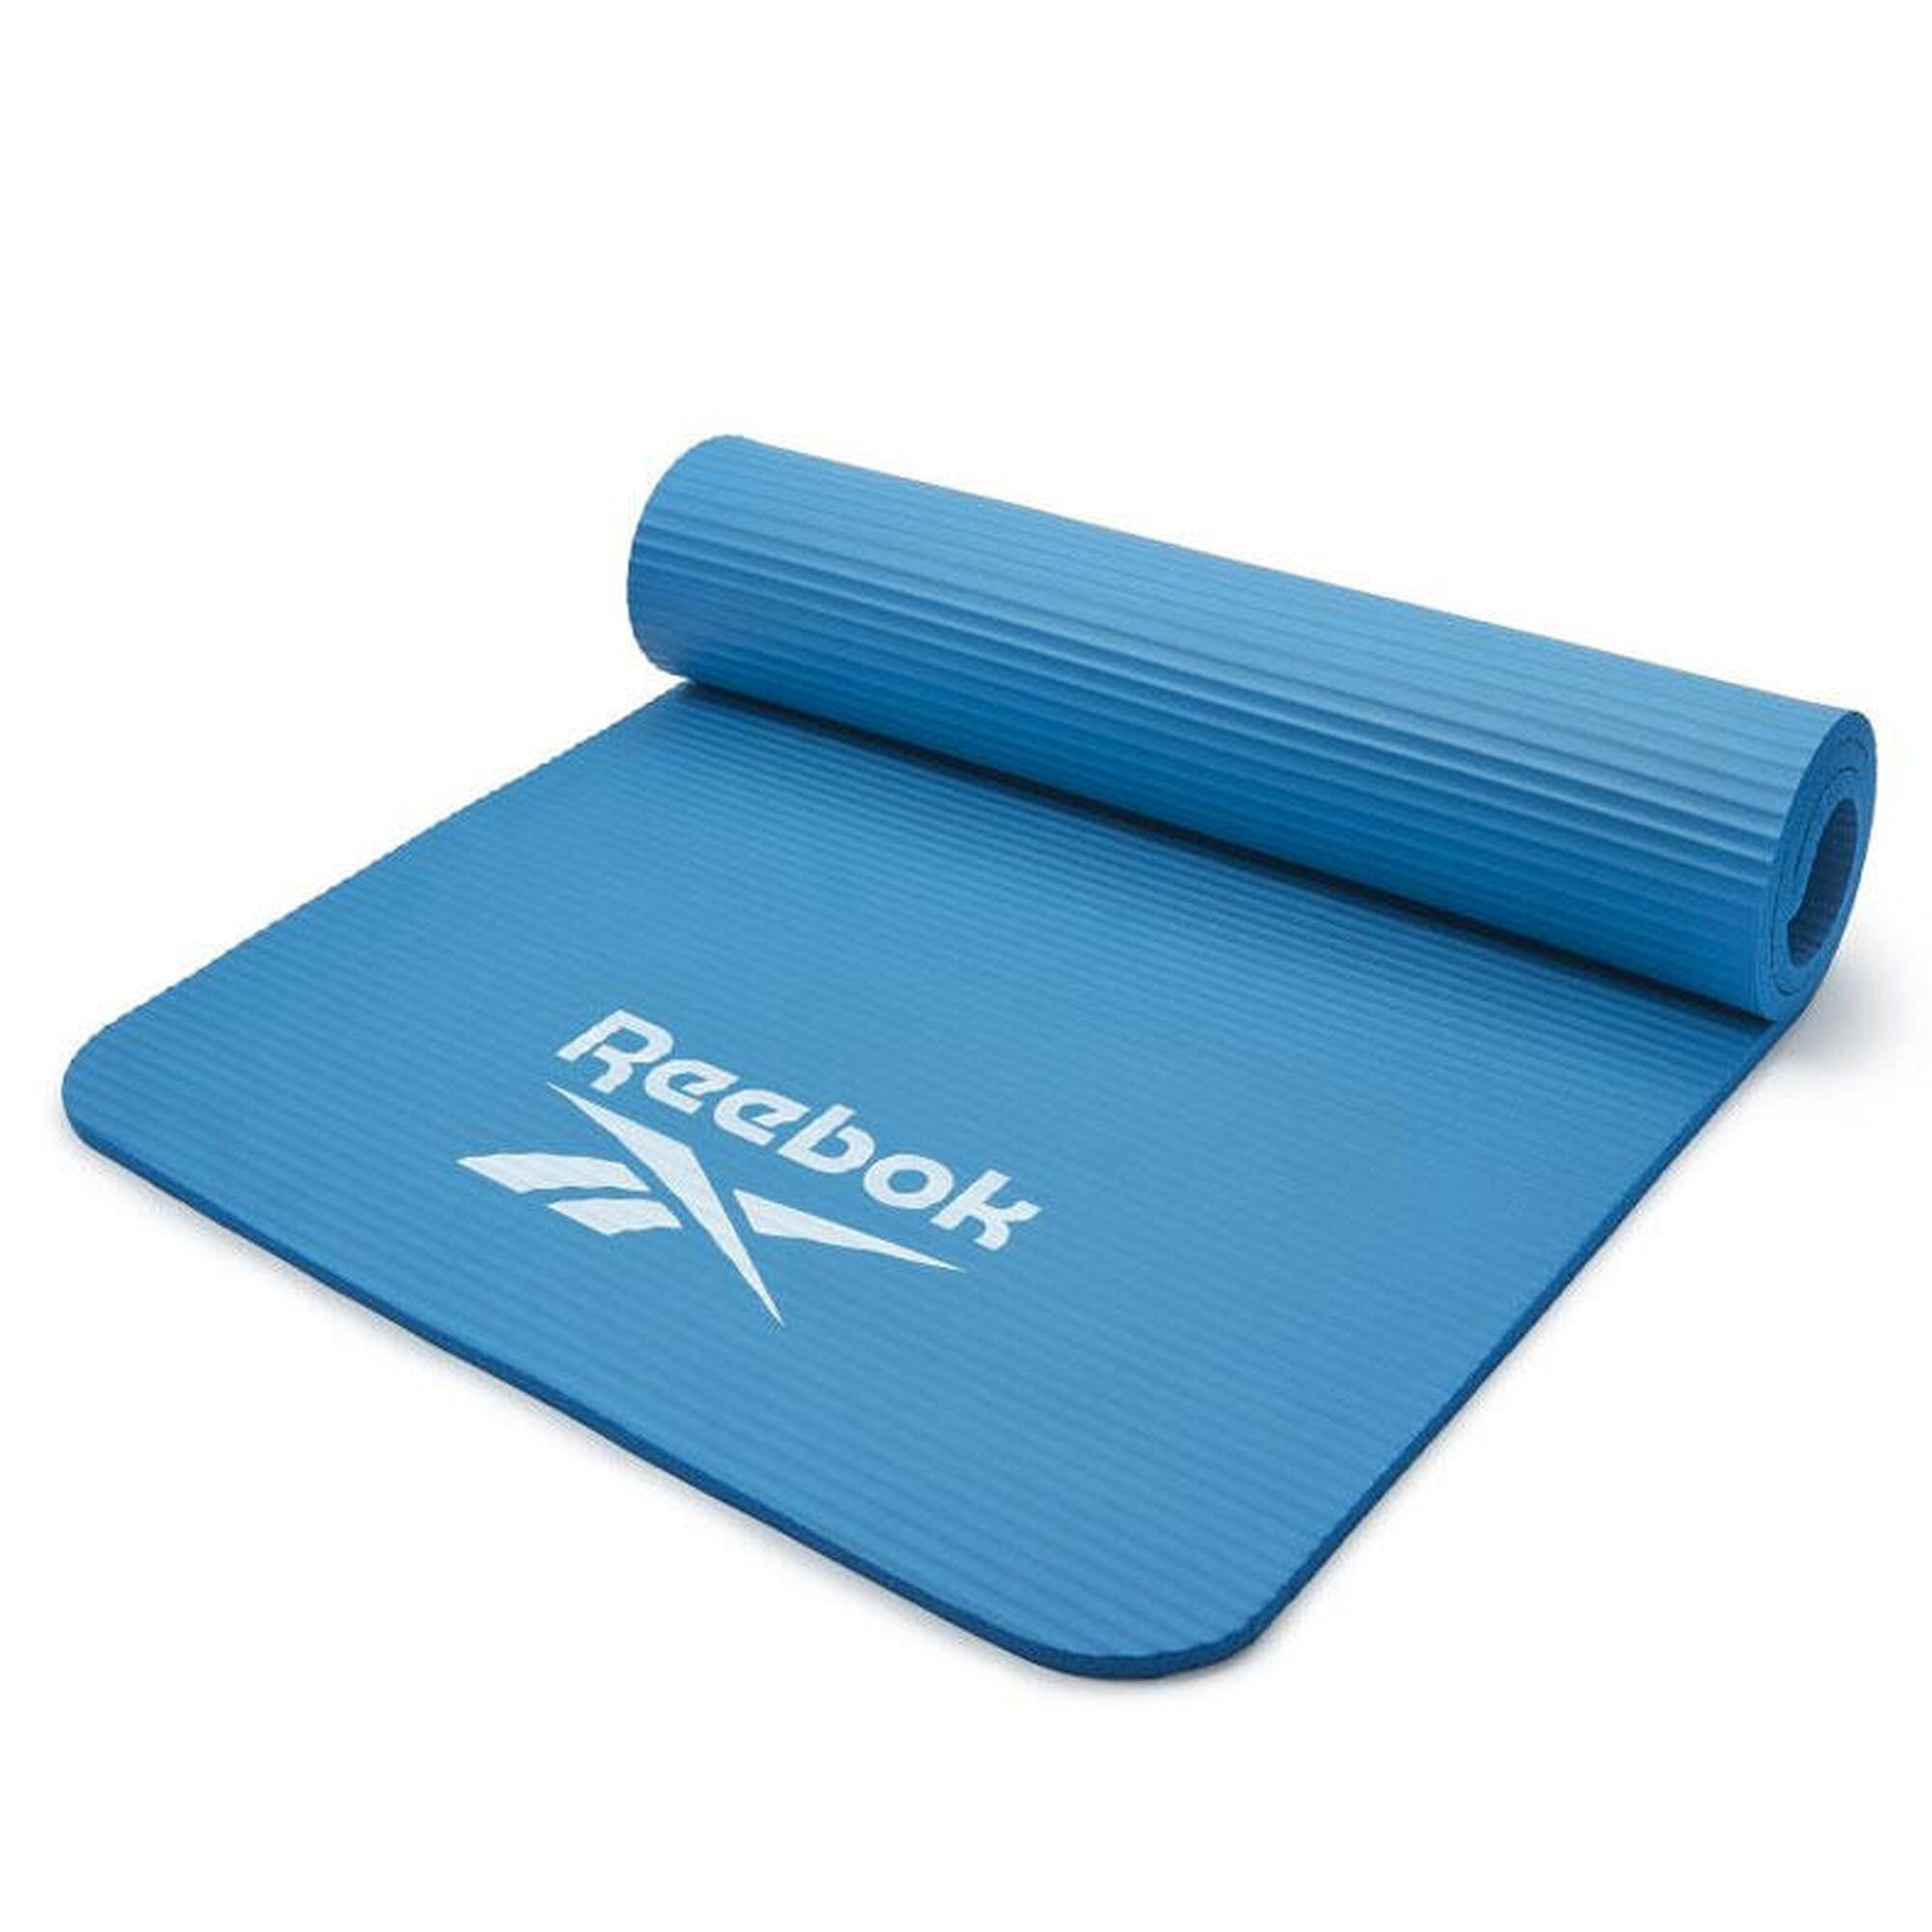 Tappetino di allenamento Reebok - 15mm - Blu